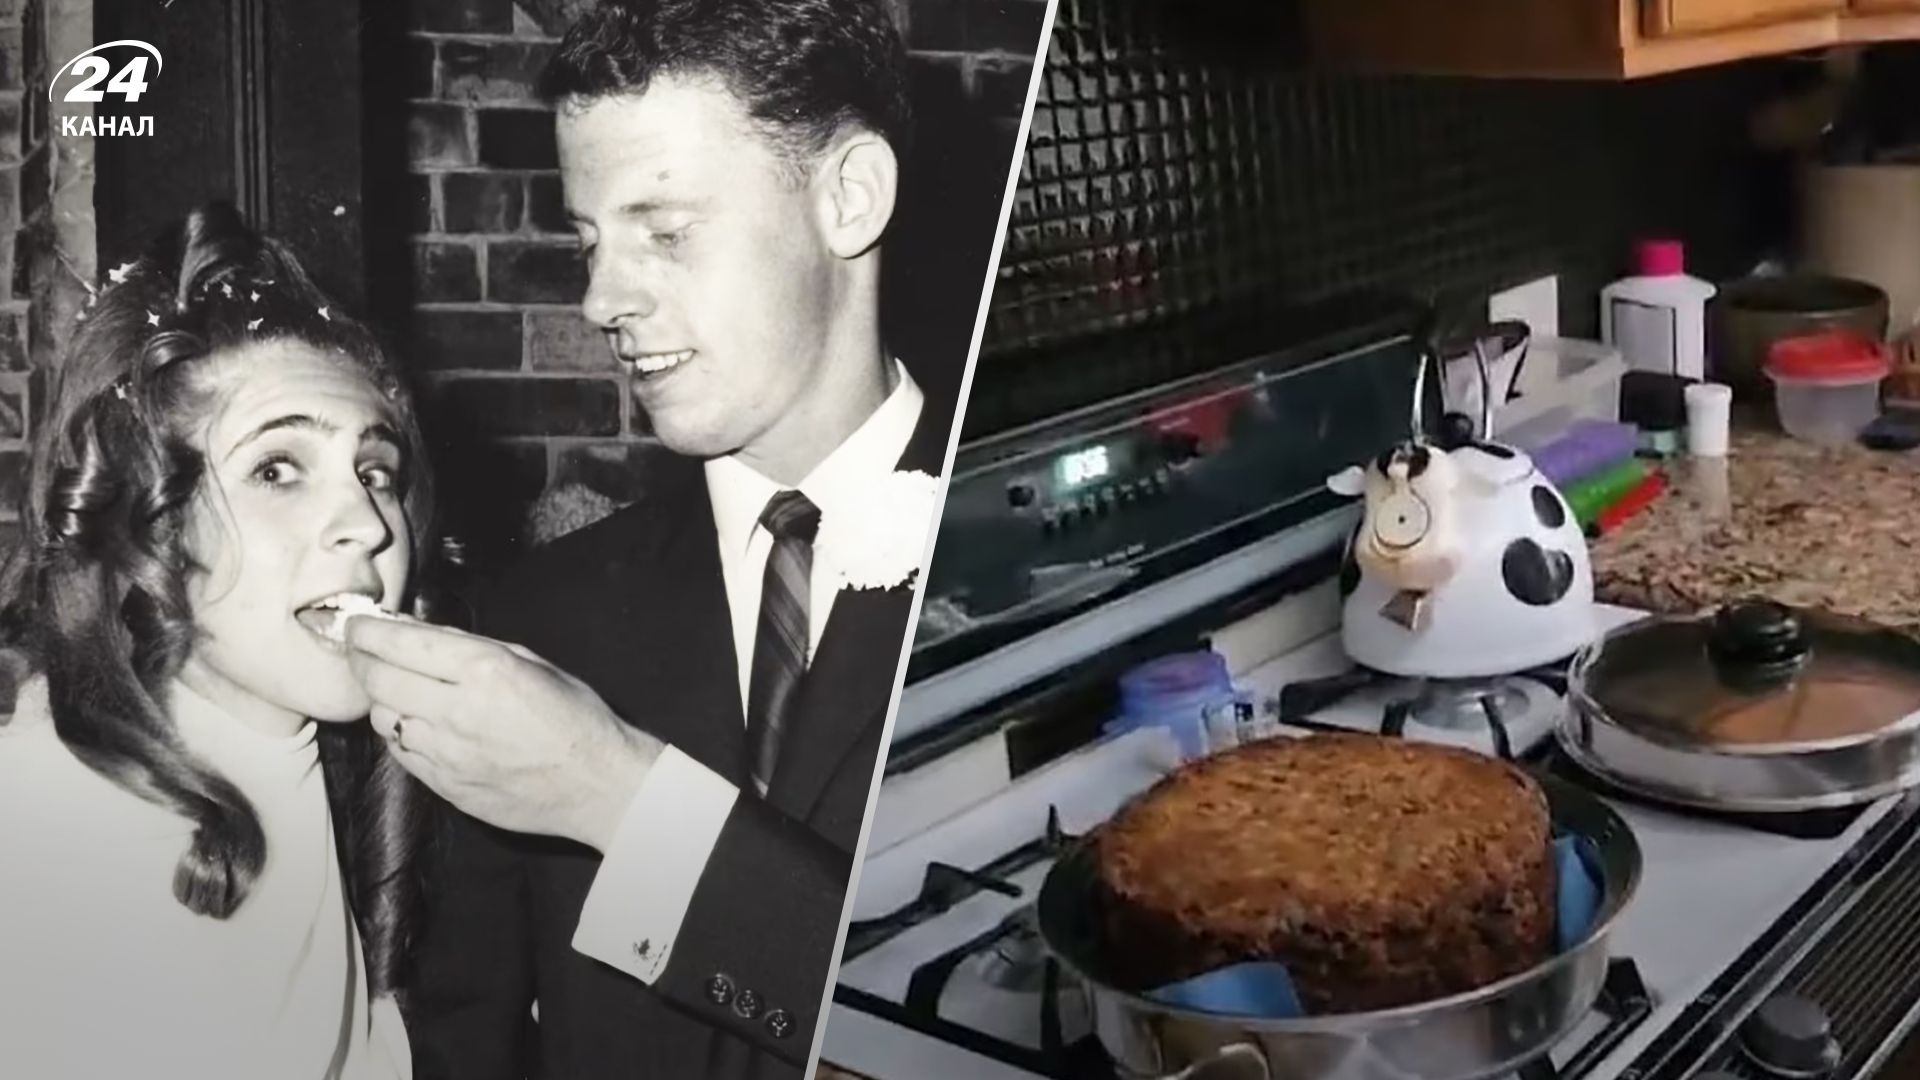 Рошель Марр нашла свой свадебный торт в морозилке спустя 55 лет после свадьбы